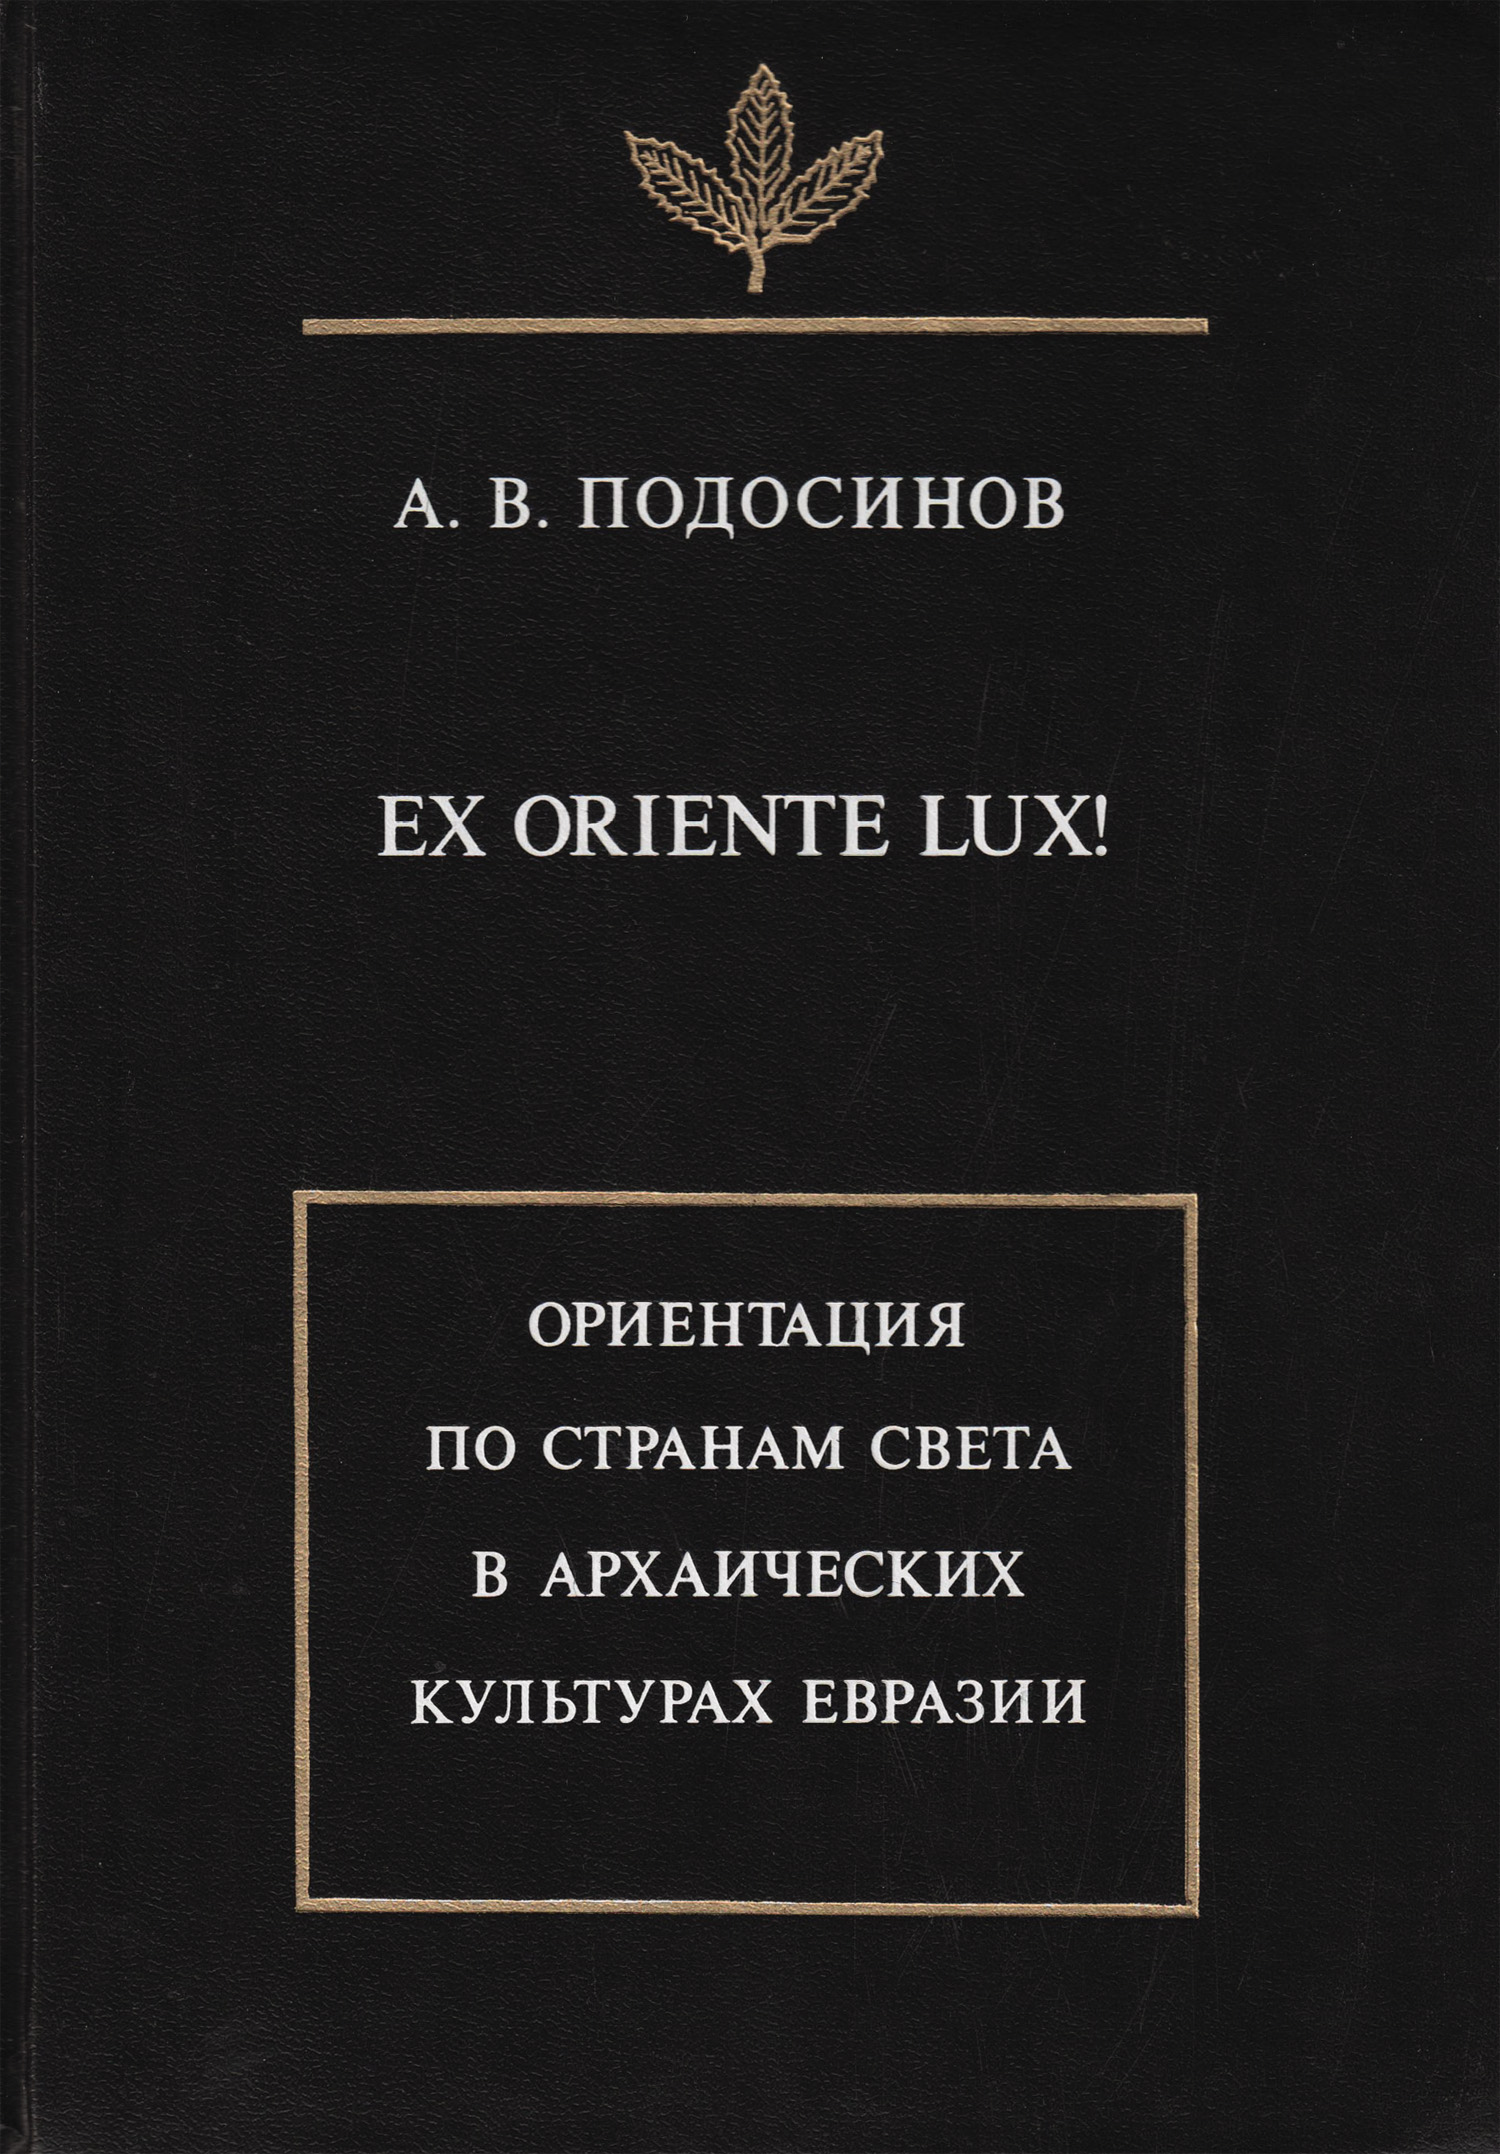 А. В. Подосинов Ex oriente lux! Ориентация по странам света в архаических культурах Евразии